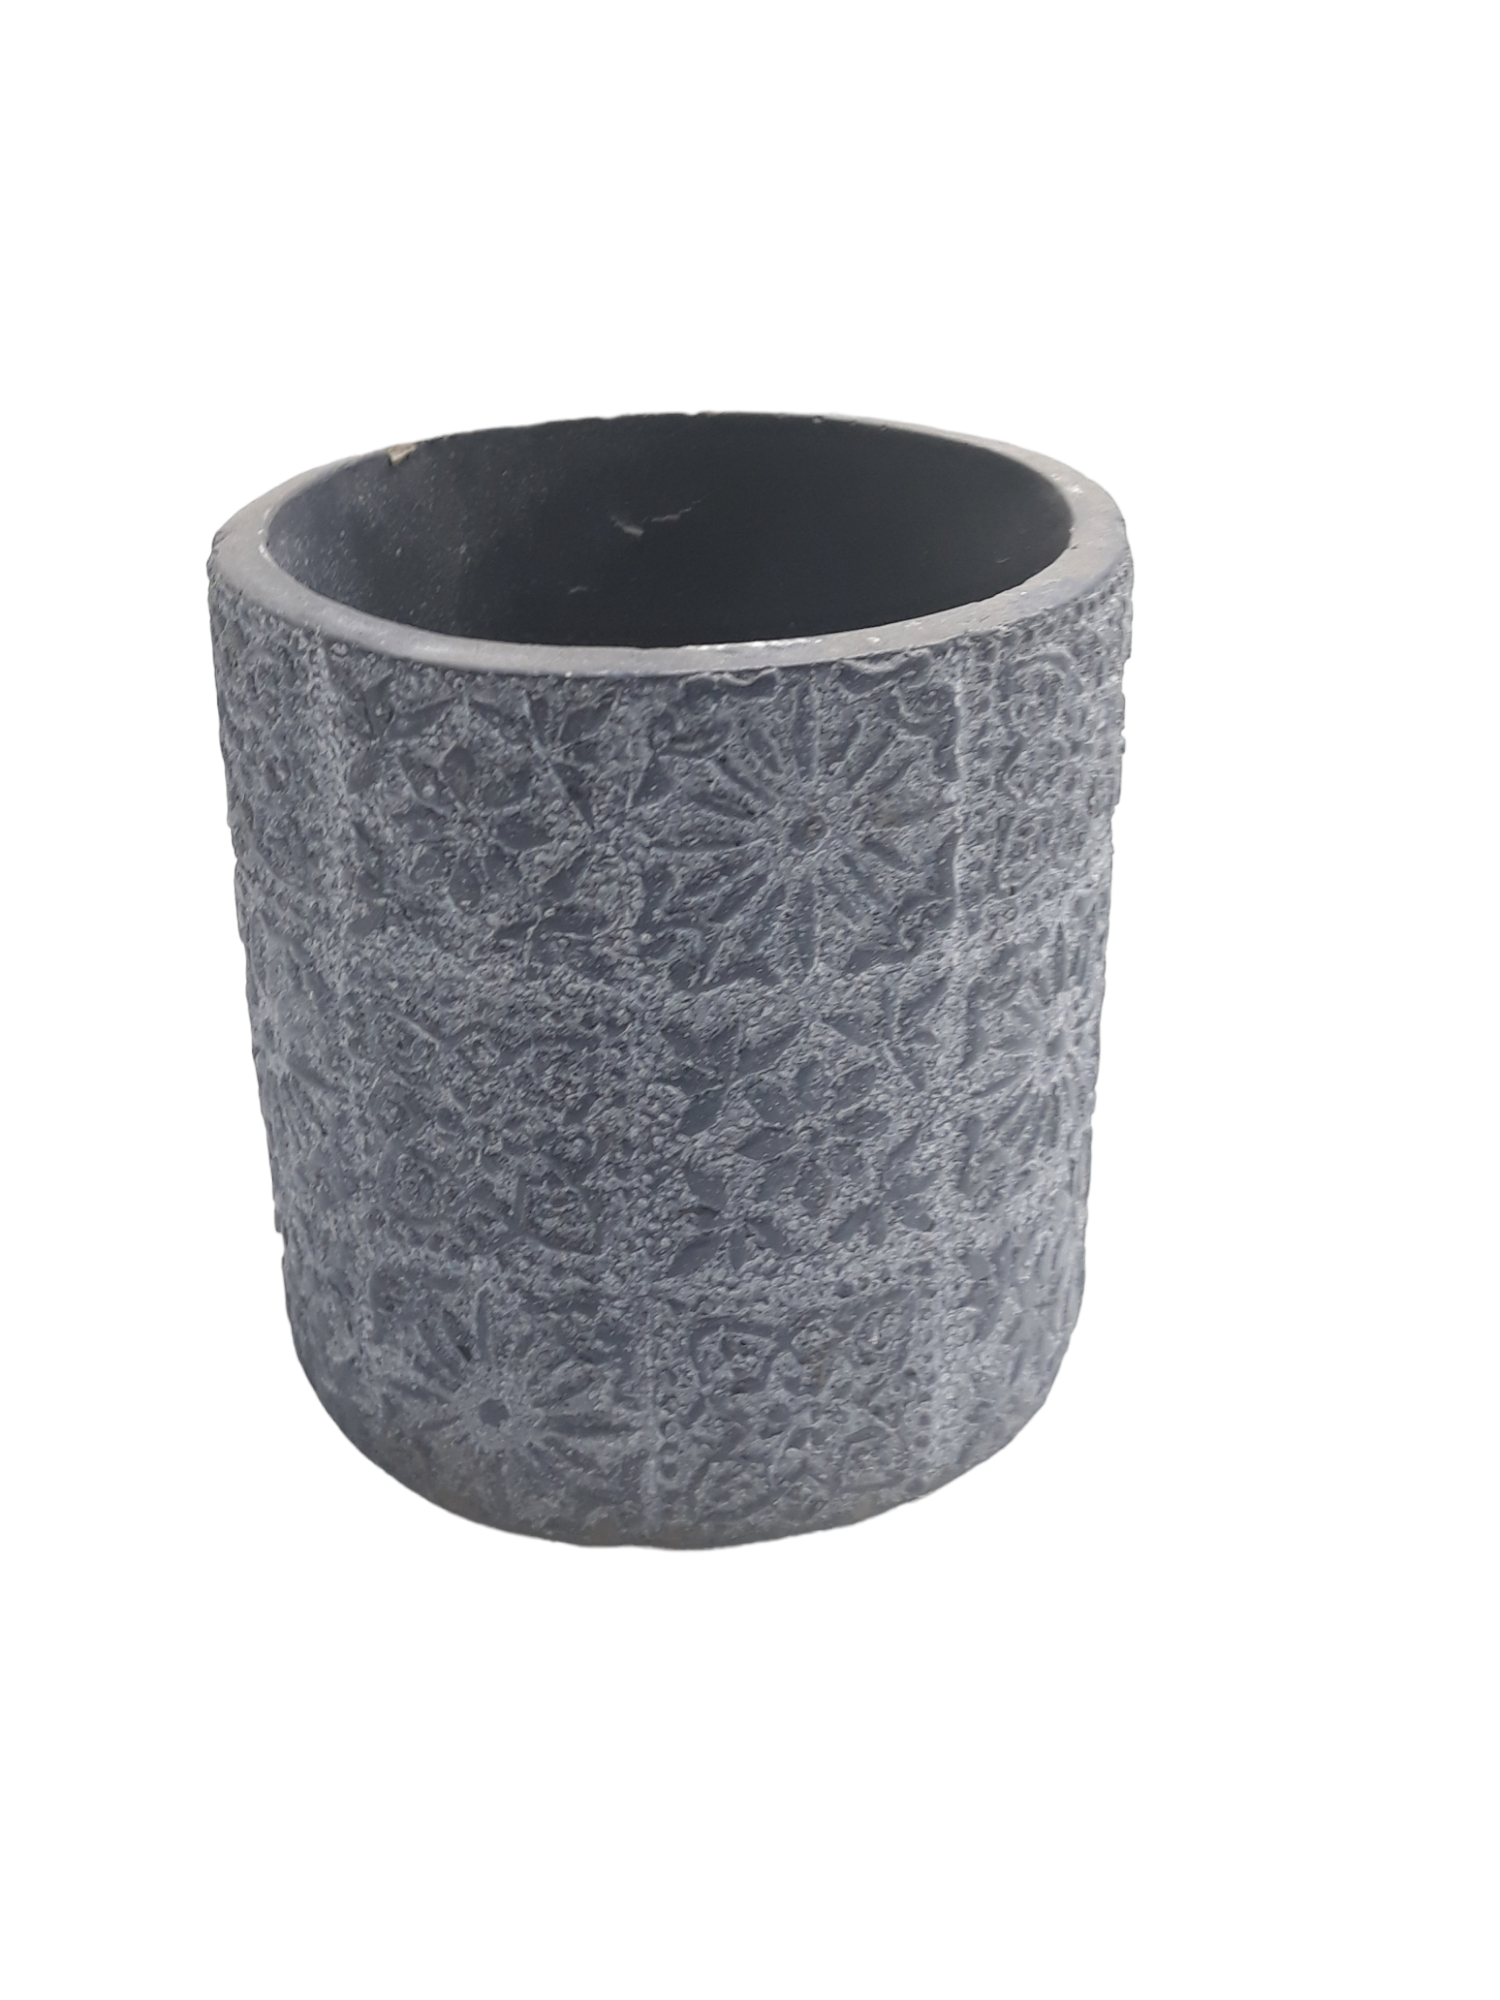 Michael Carr Designs® 3.5" Floral Patchwork Pot - Blackish Green